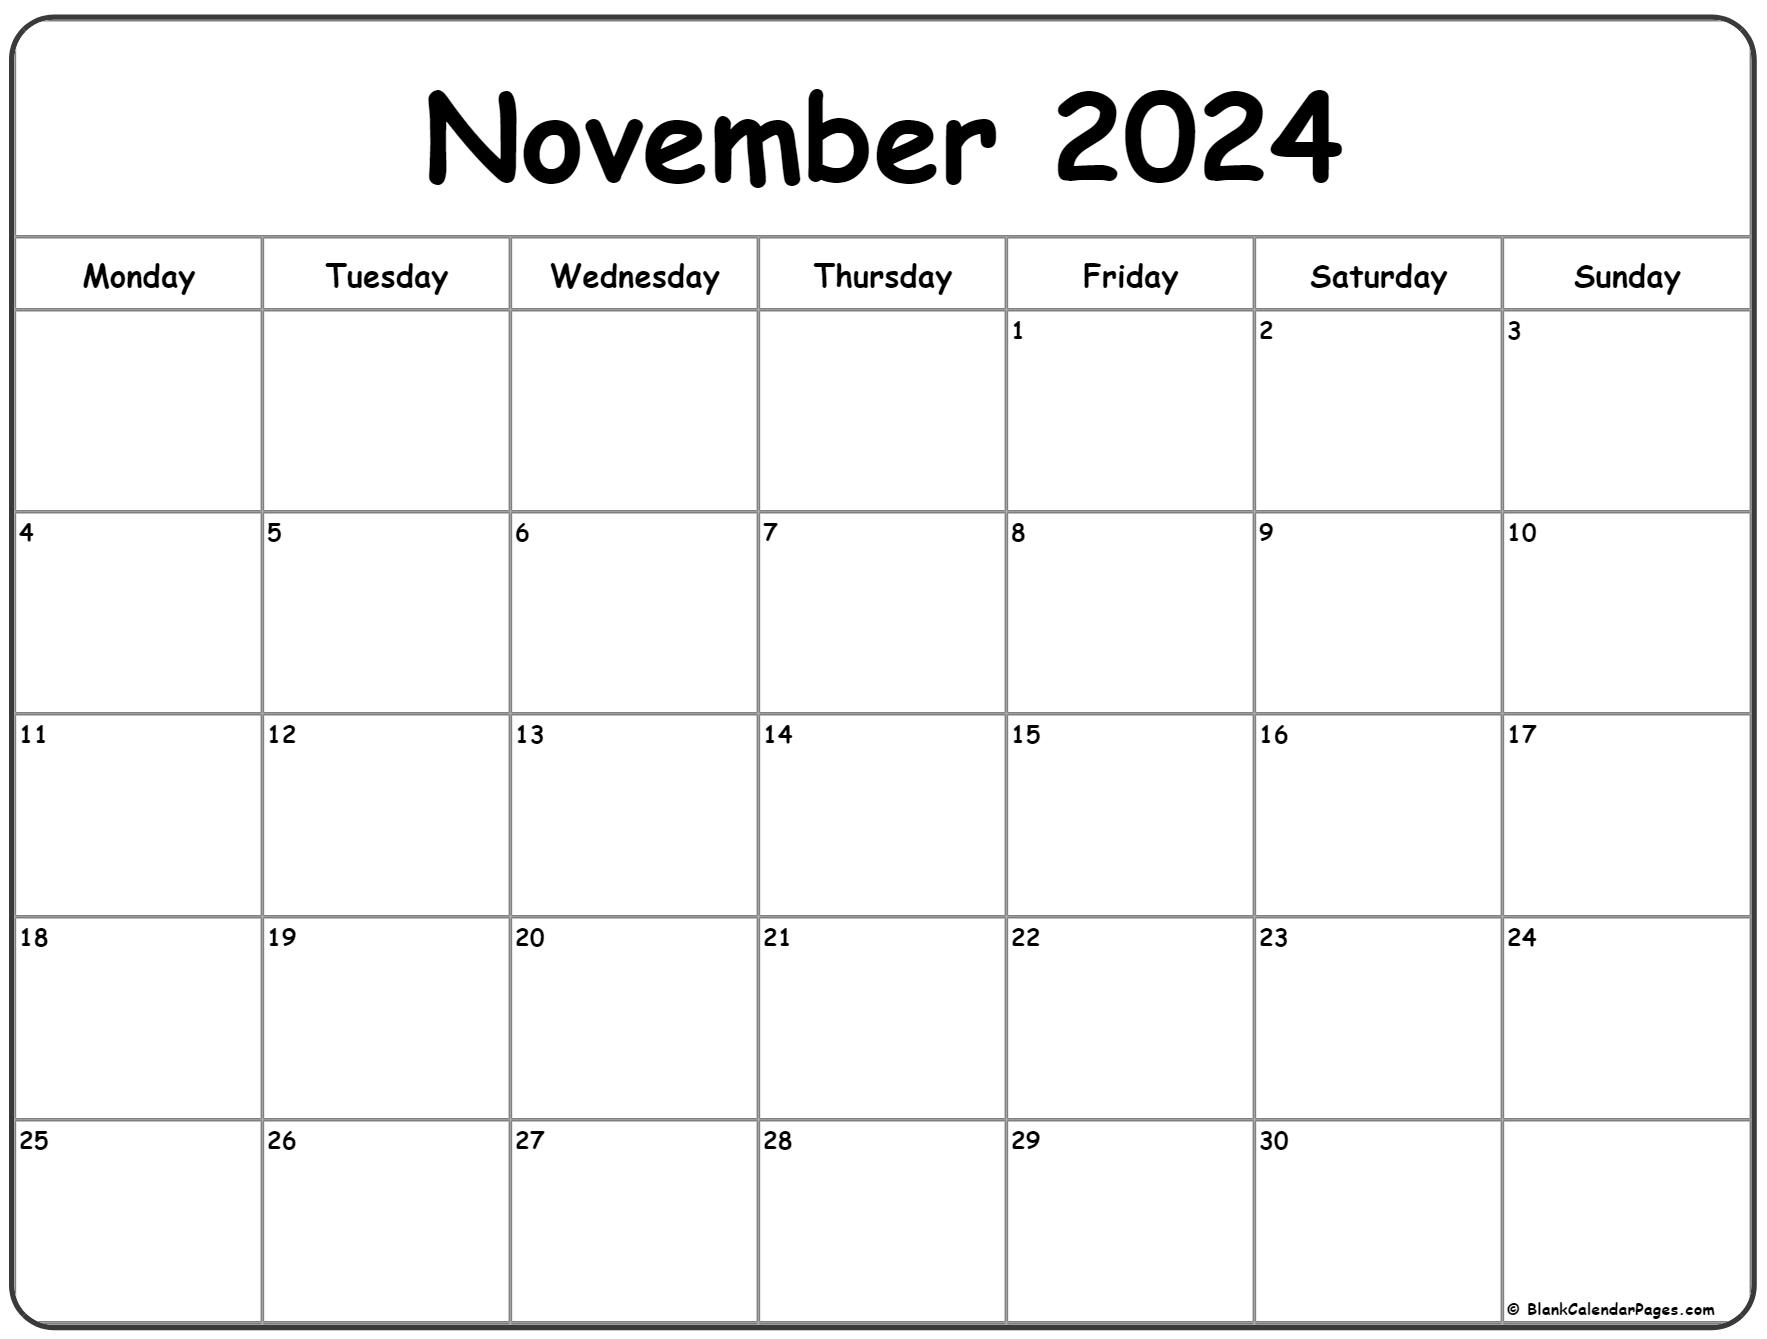 November 2024 Monday Calendar | Monday To Sunday for 2024 November Calendar Printable